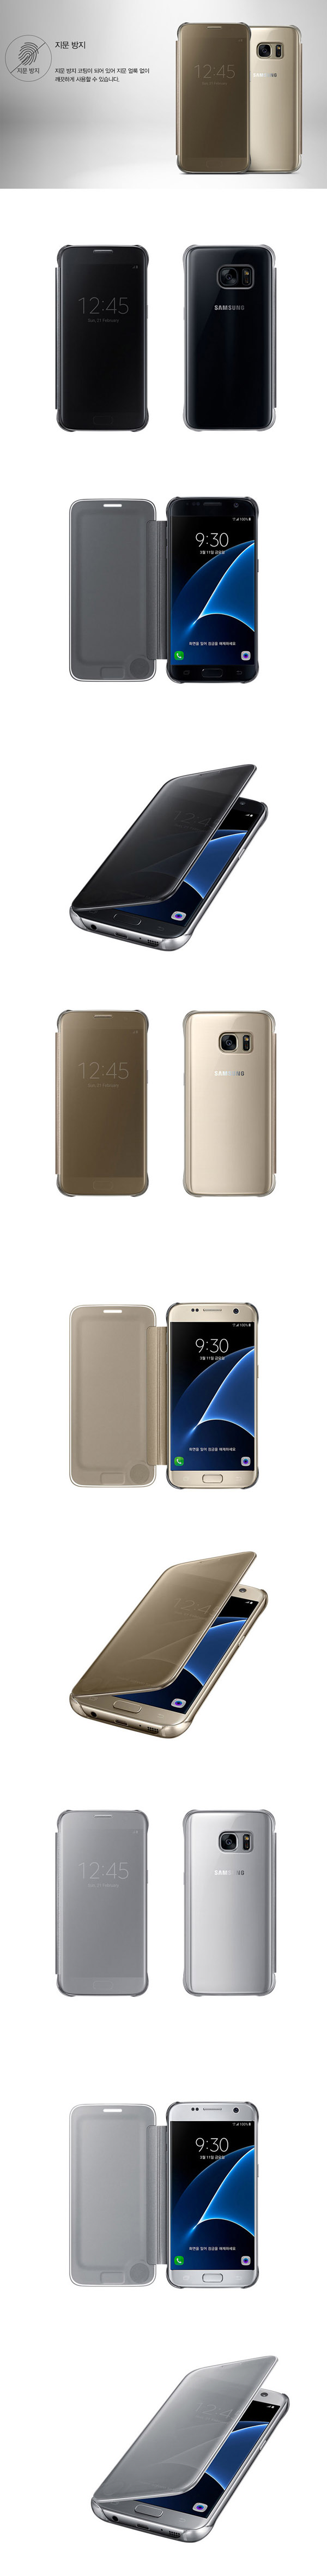 Bao da Galaxy S7 edge Clear View chính hãng Samsung (Full Box) 236